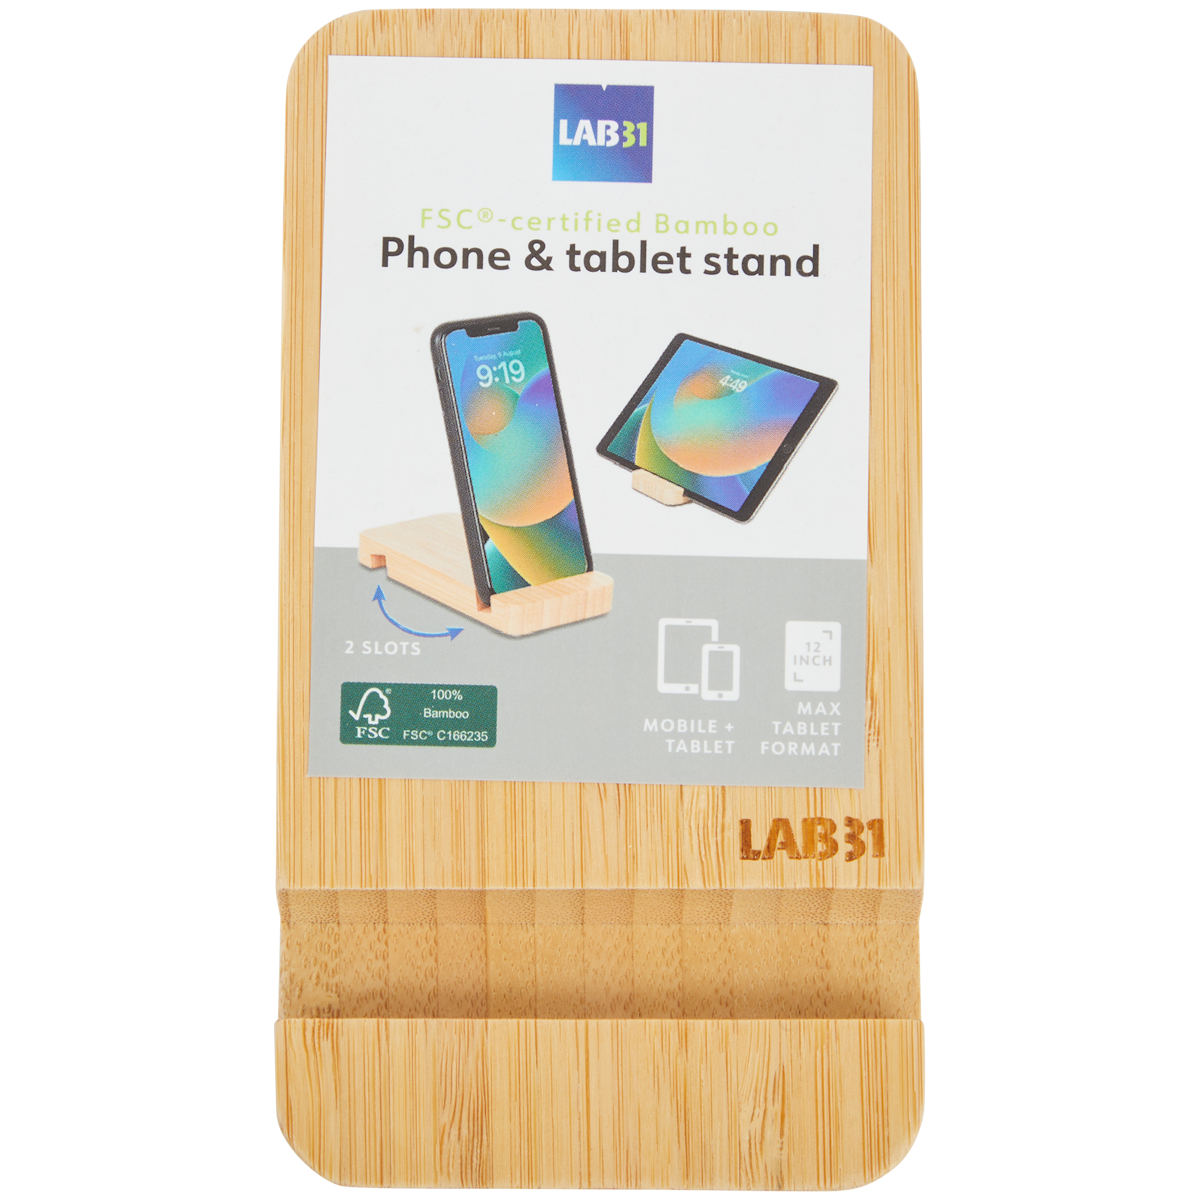 Supporto per tablet e smartphone in bambù Lab31